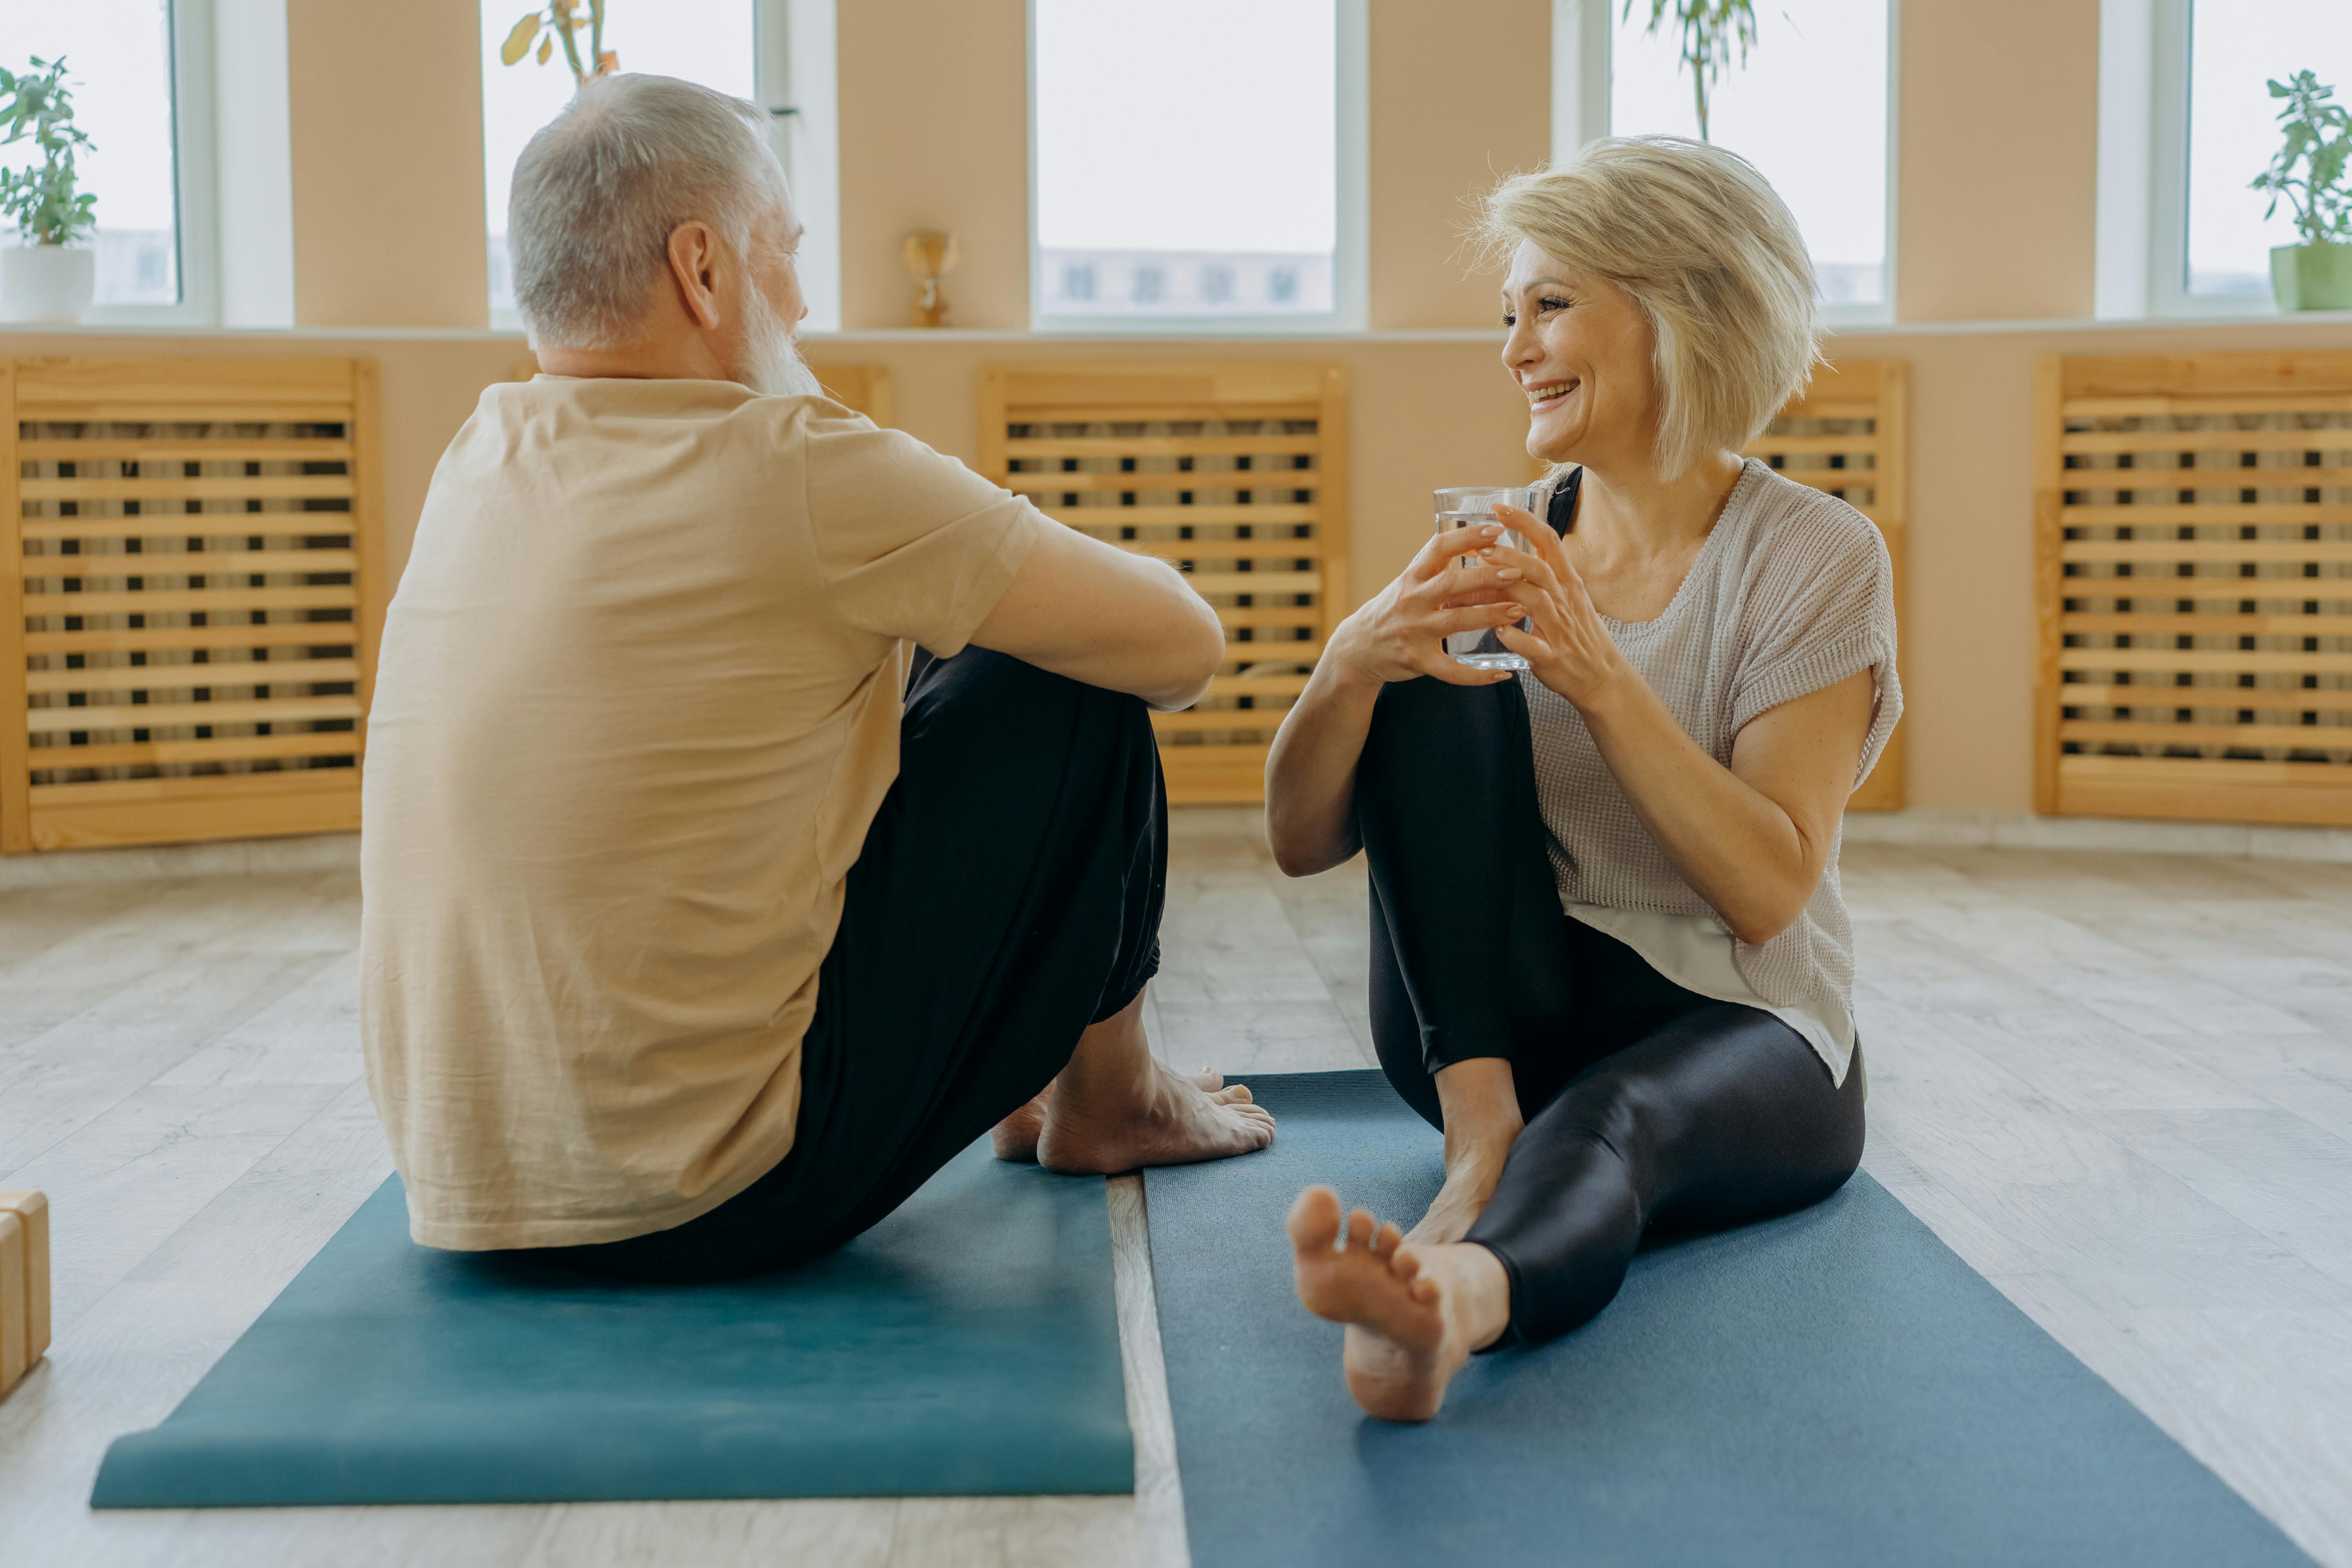 Un homme et une femme heureux discutent après avoir fait du yoga | Source : Pexels